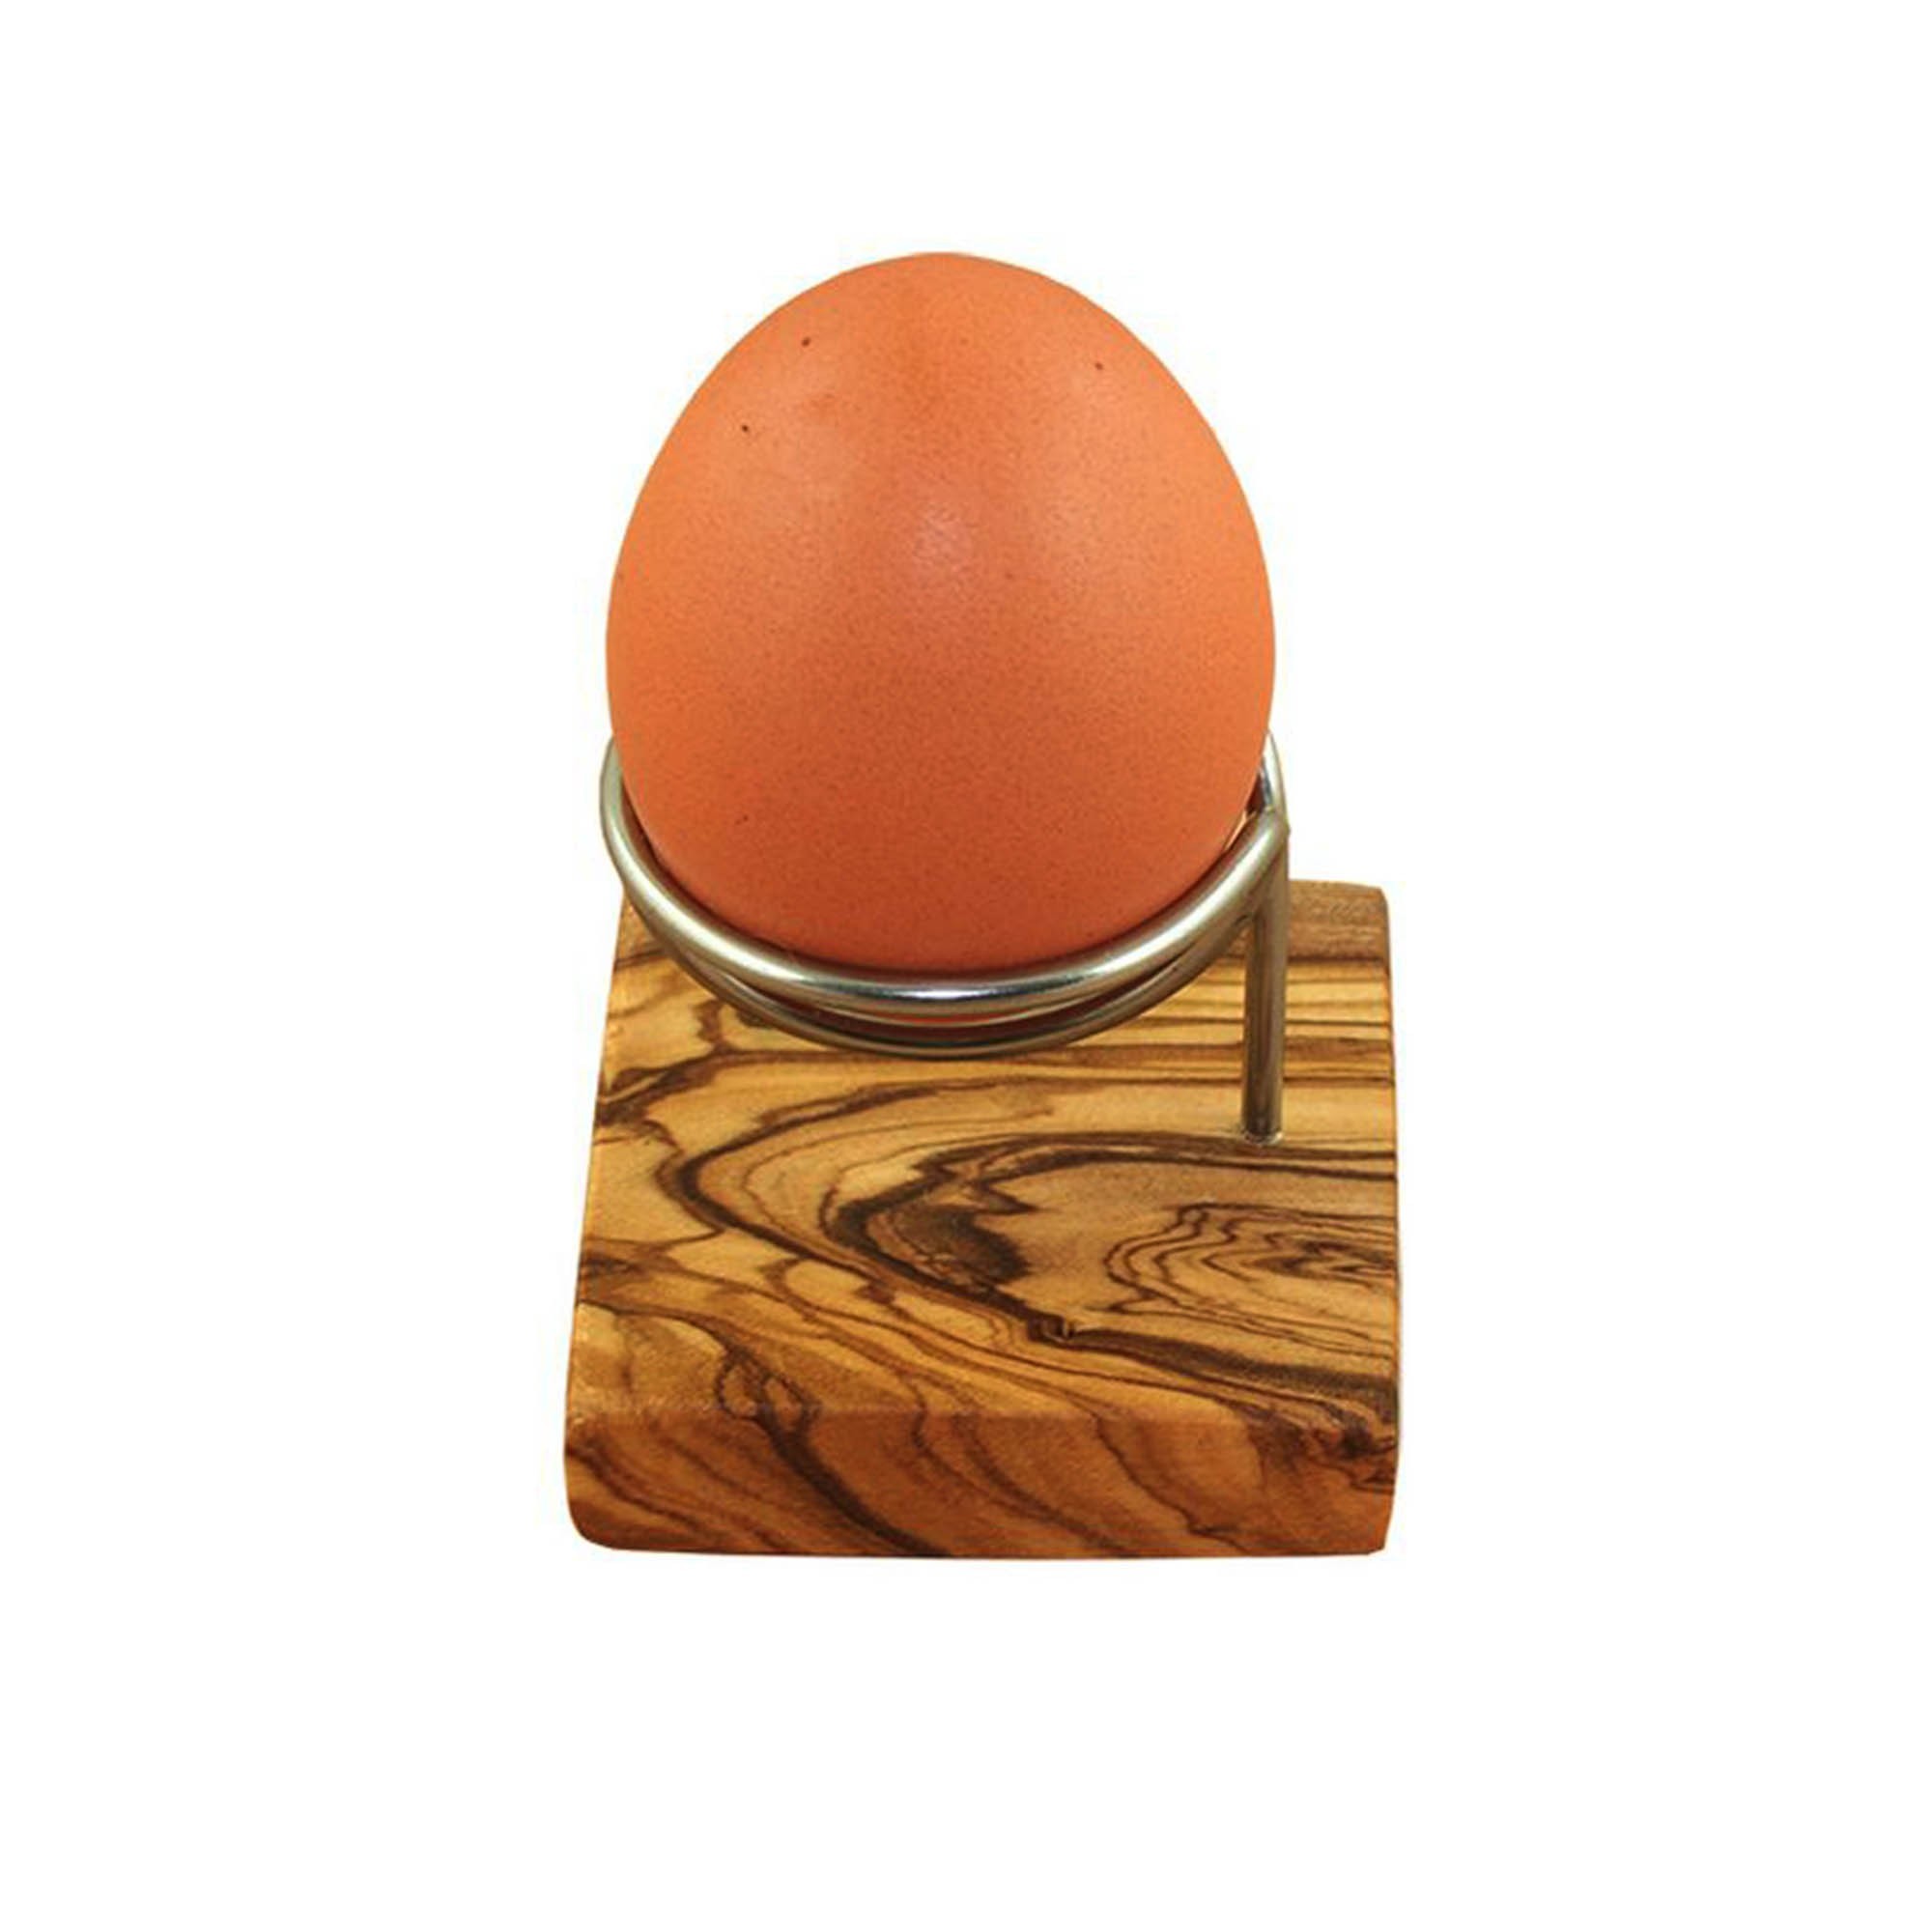 Eierbecher Design aus Olivenholz kaufen